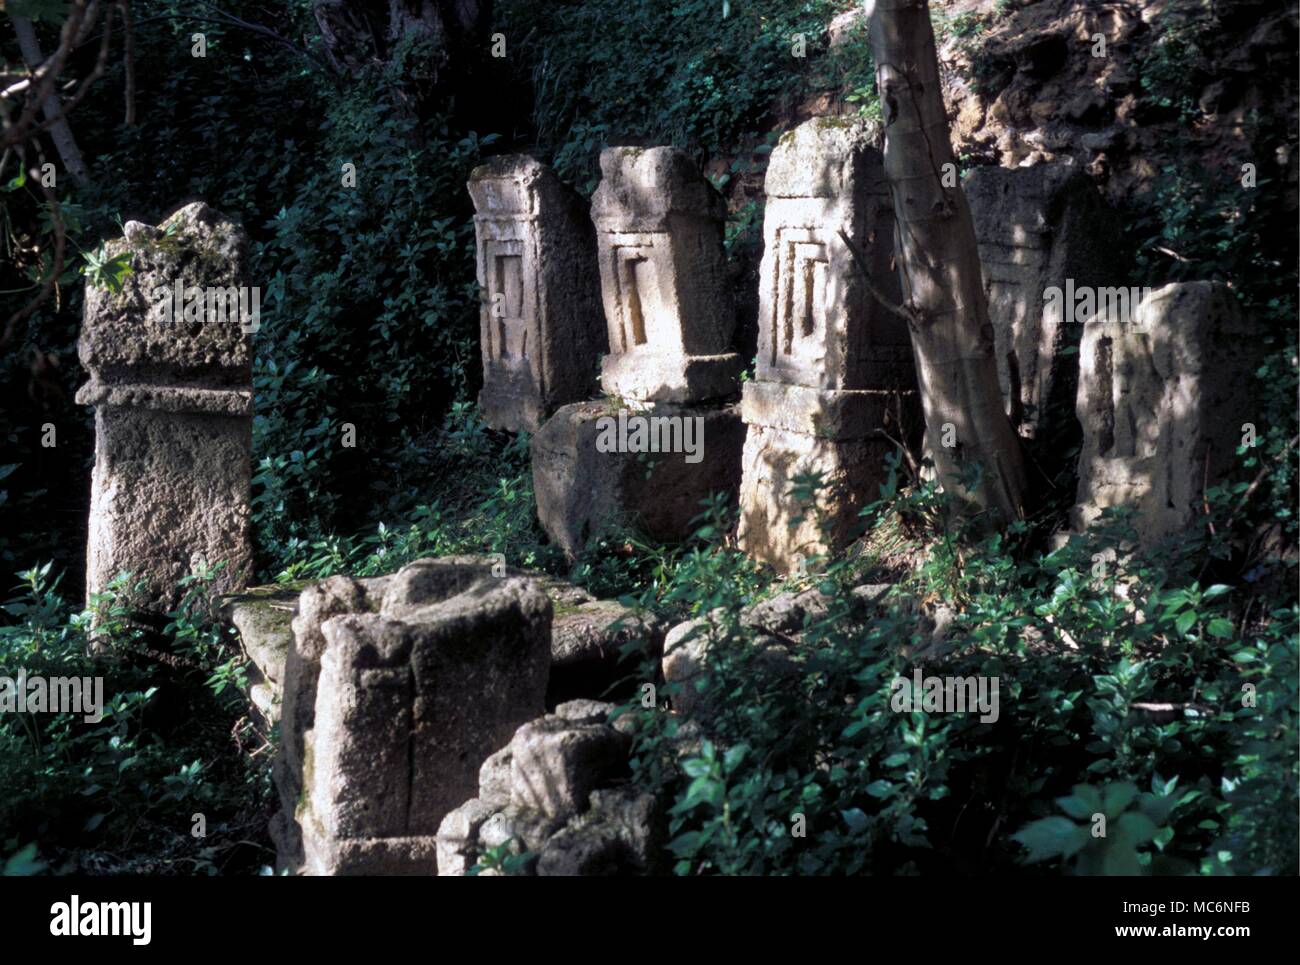 Tunisie Tophet tombes et monuments commémoratifs dans le Tophet près de Carthage (Tunis moderne) où la sépulture de ces sacrifiés aux dieux antiques Carthagian est préservée avec un hypogée lié de l'eau Banque D'Images